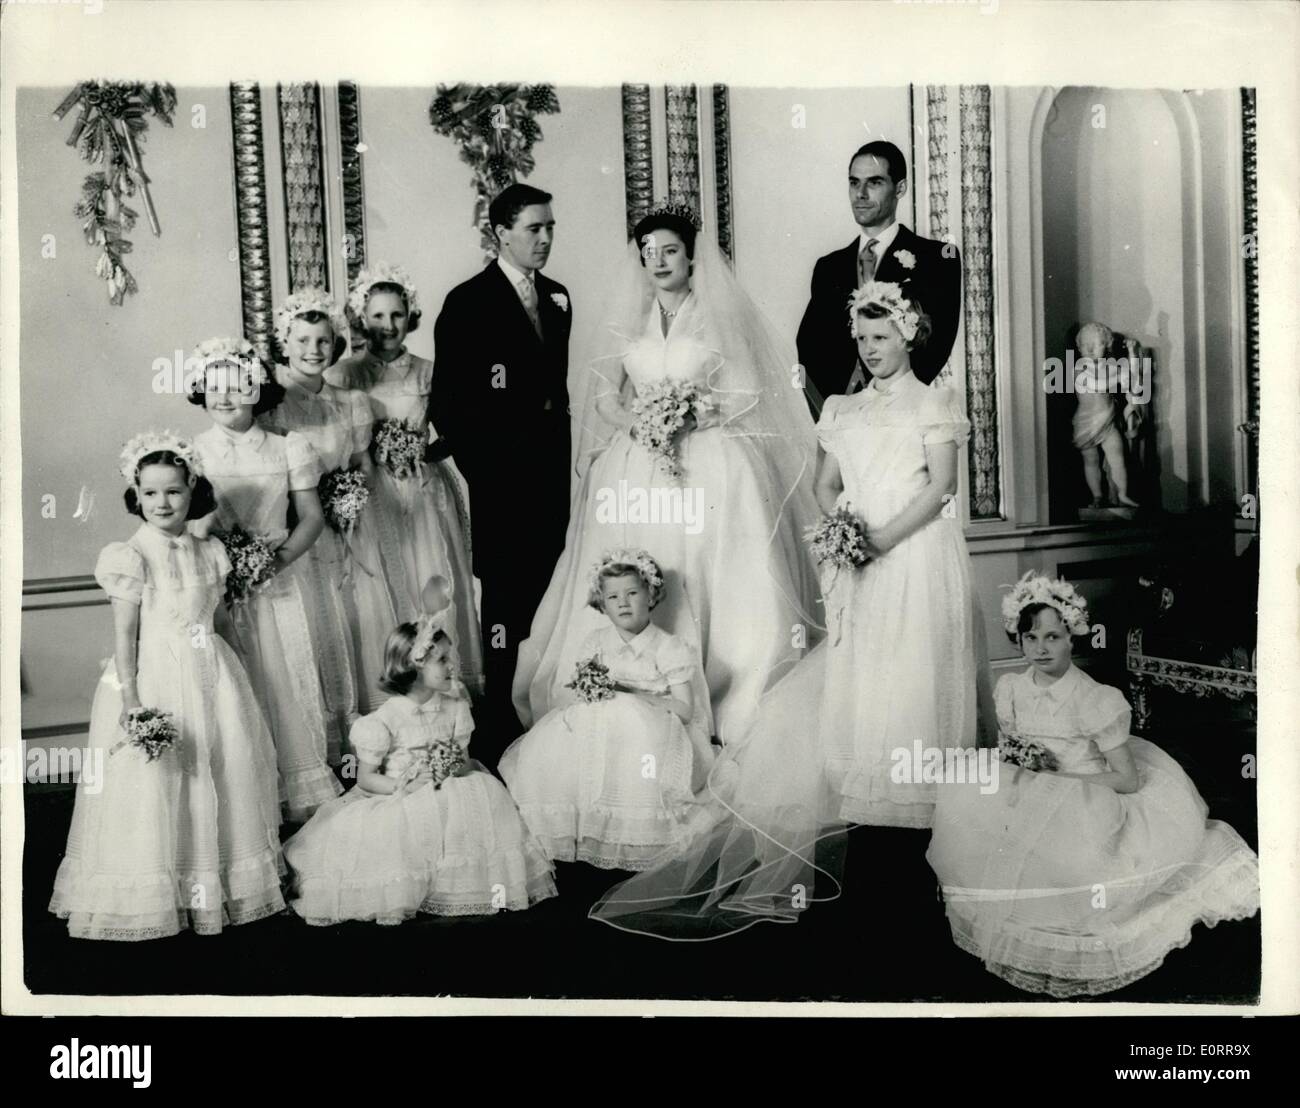 05 maggio 1960 - Il Royal Wedding gruppo ufficiale a Buckingham Palace. La foto mostra la principessa Margaret con suo marito Antony Armstrong Jones - loro bridesmaids compresi Princess Anne (in piedi - destra) e miglior uomo - dottor Roger Gilliatt - a Buckingham Palace questo pomeriggio. Foto Stock